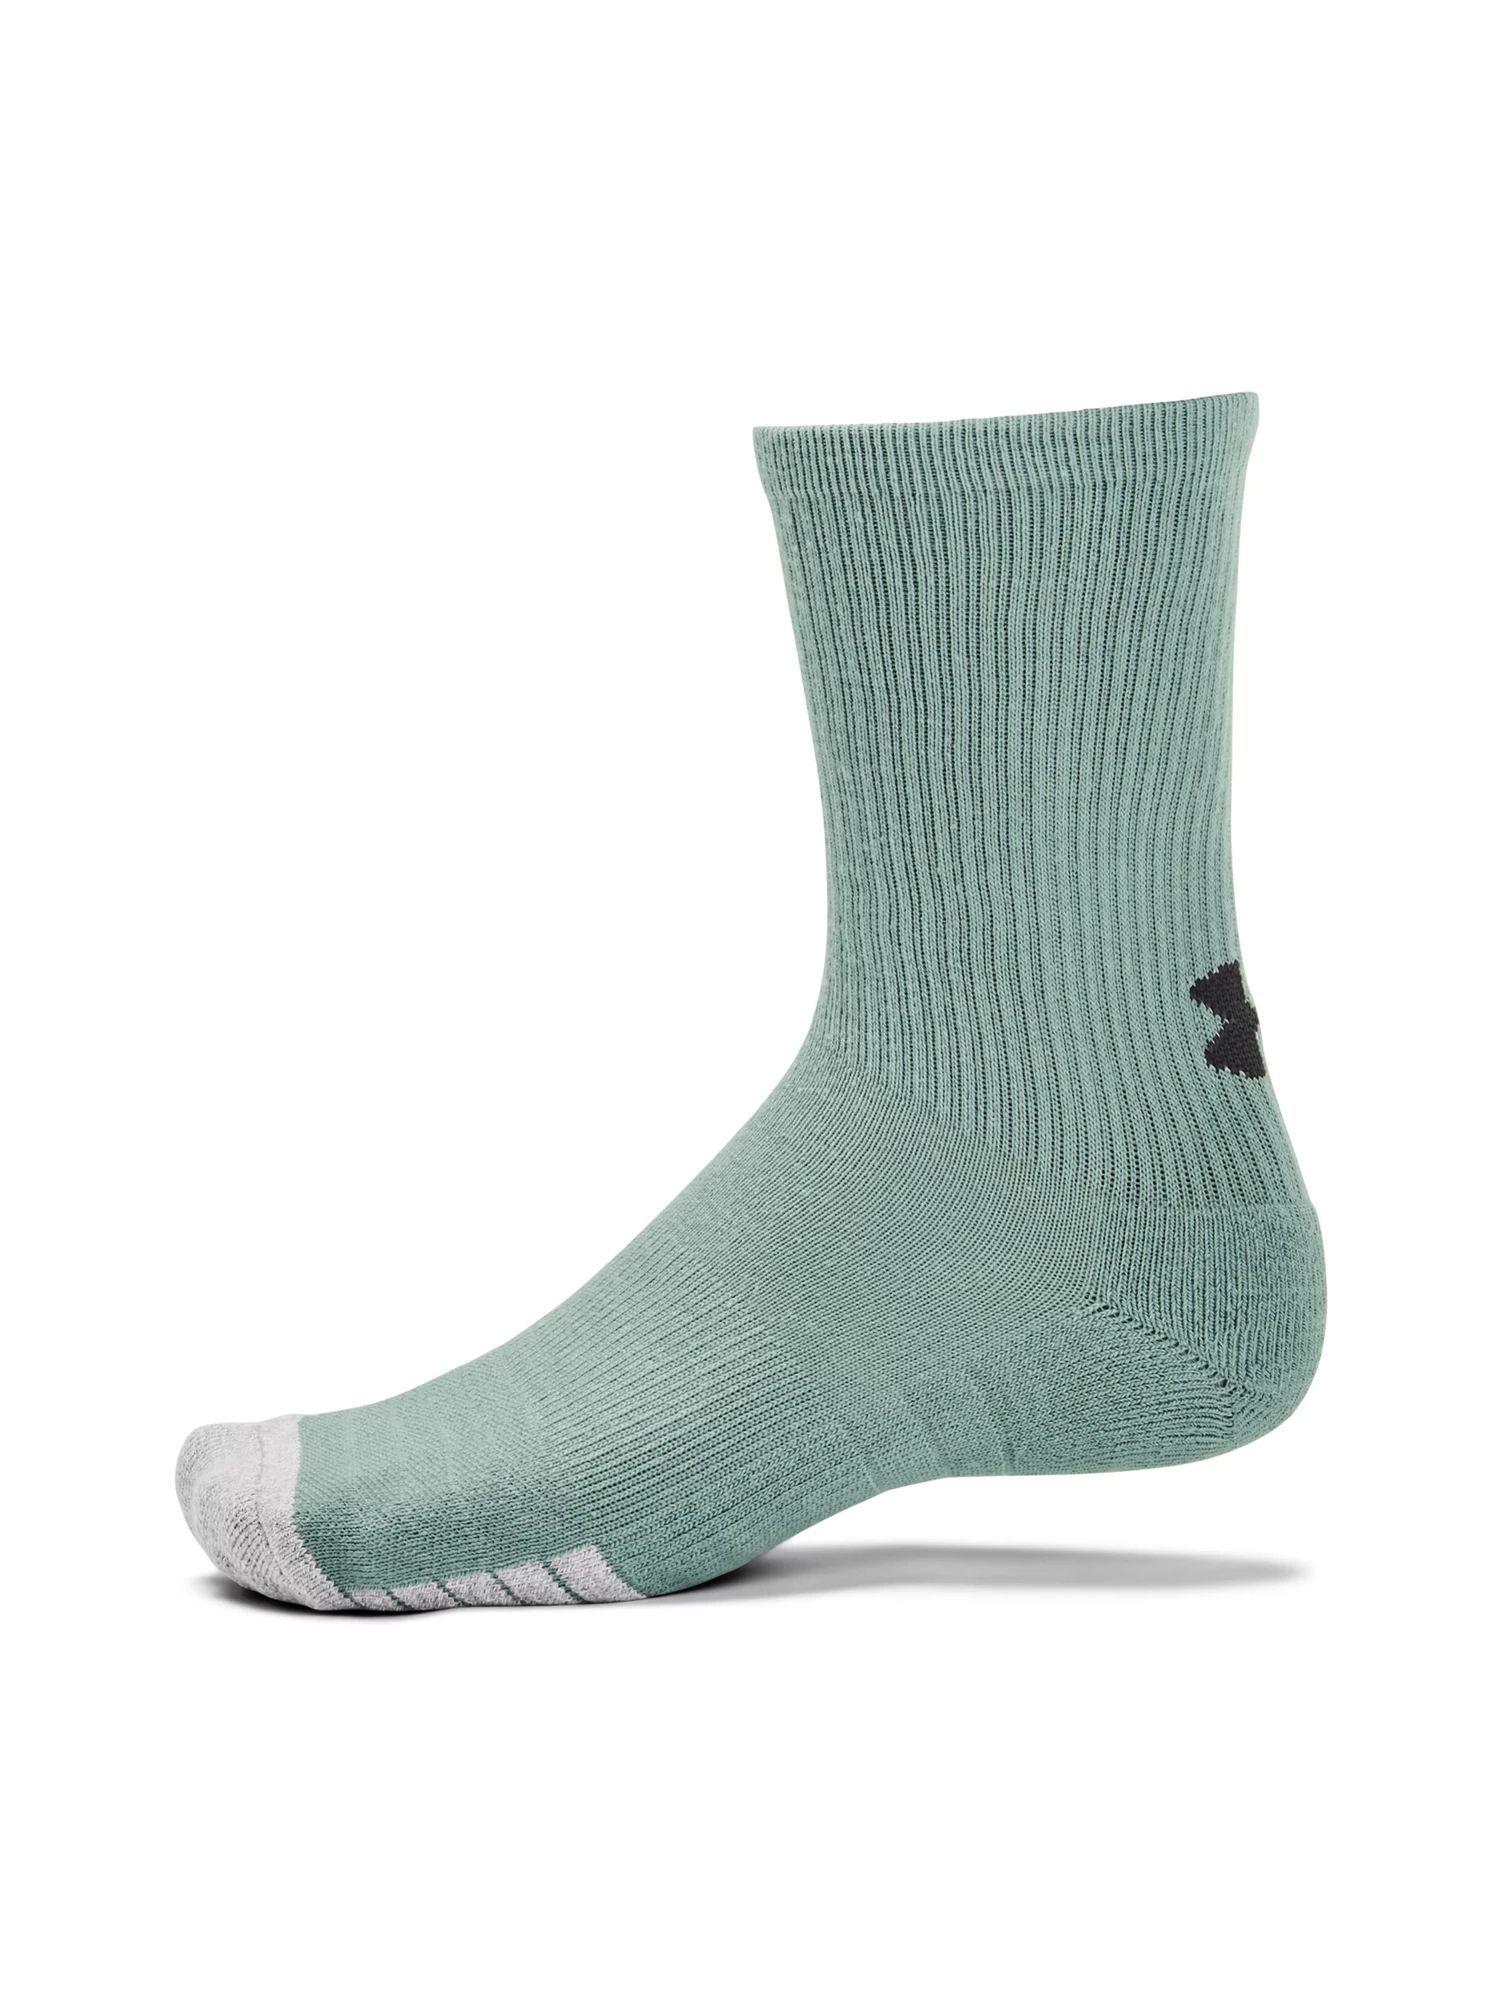 unisex heat gear crew socks - green (pack of 3)